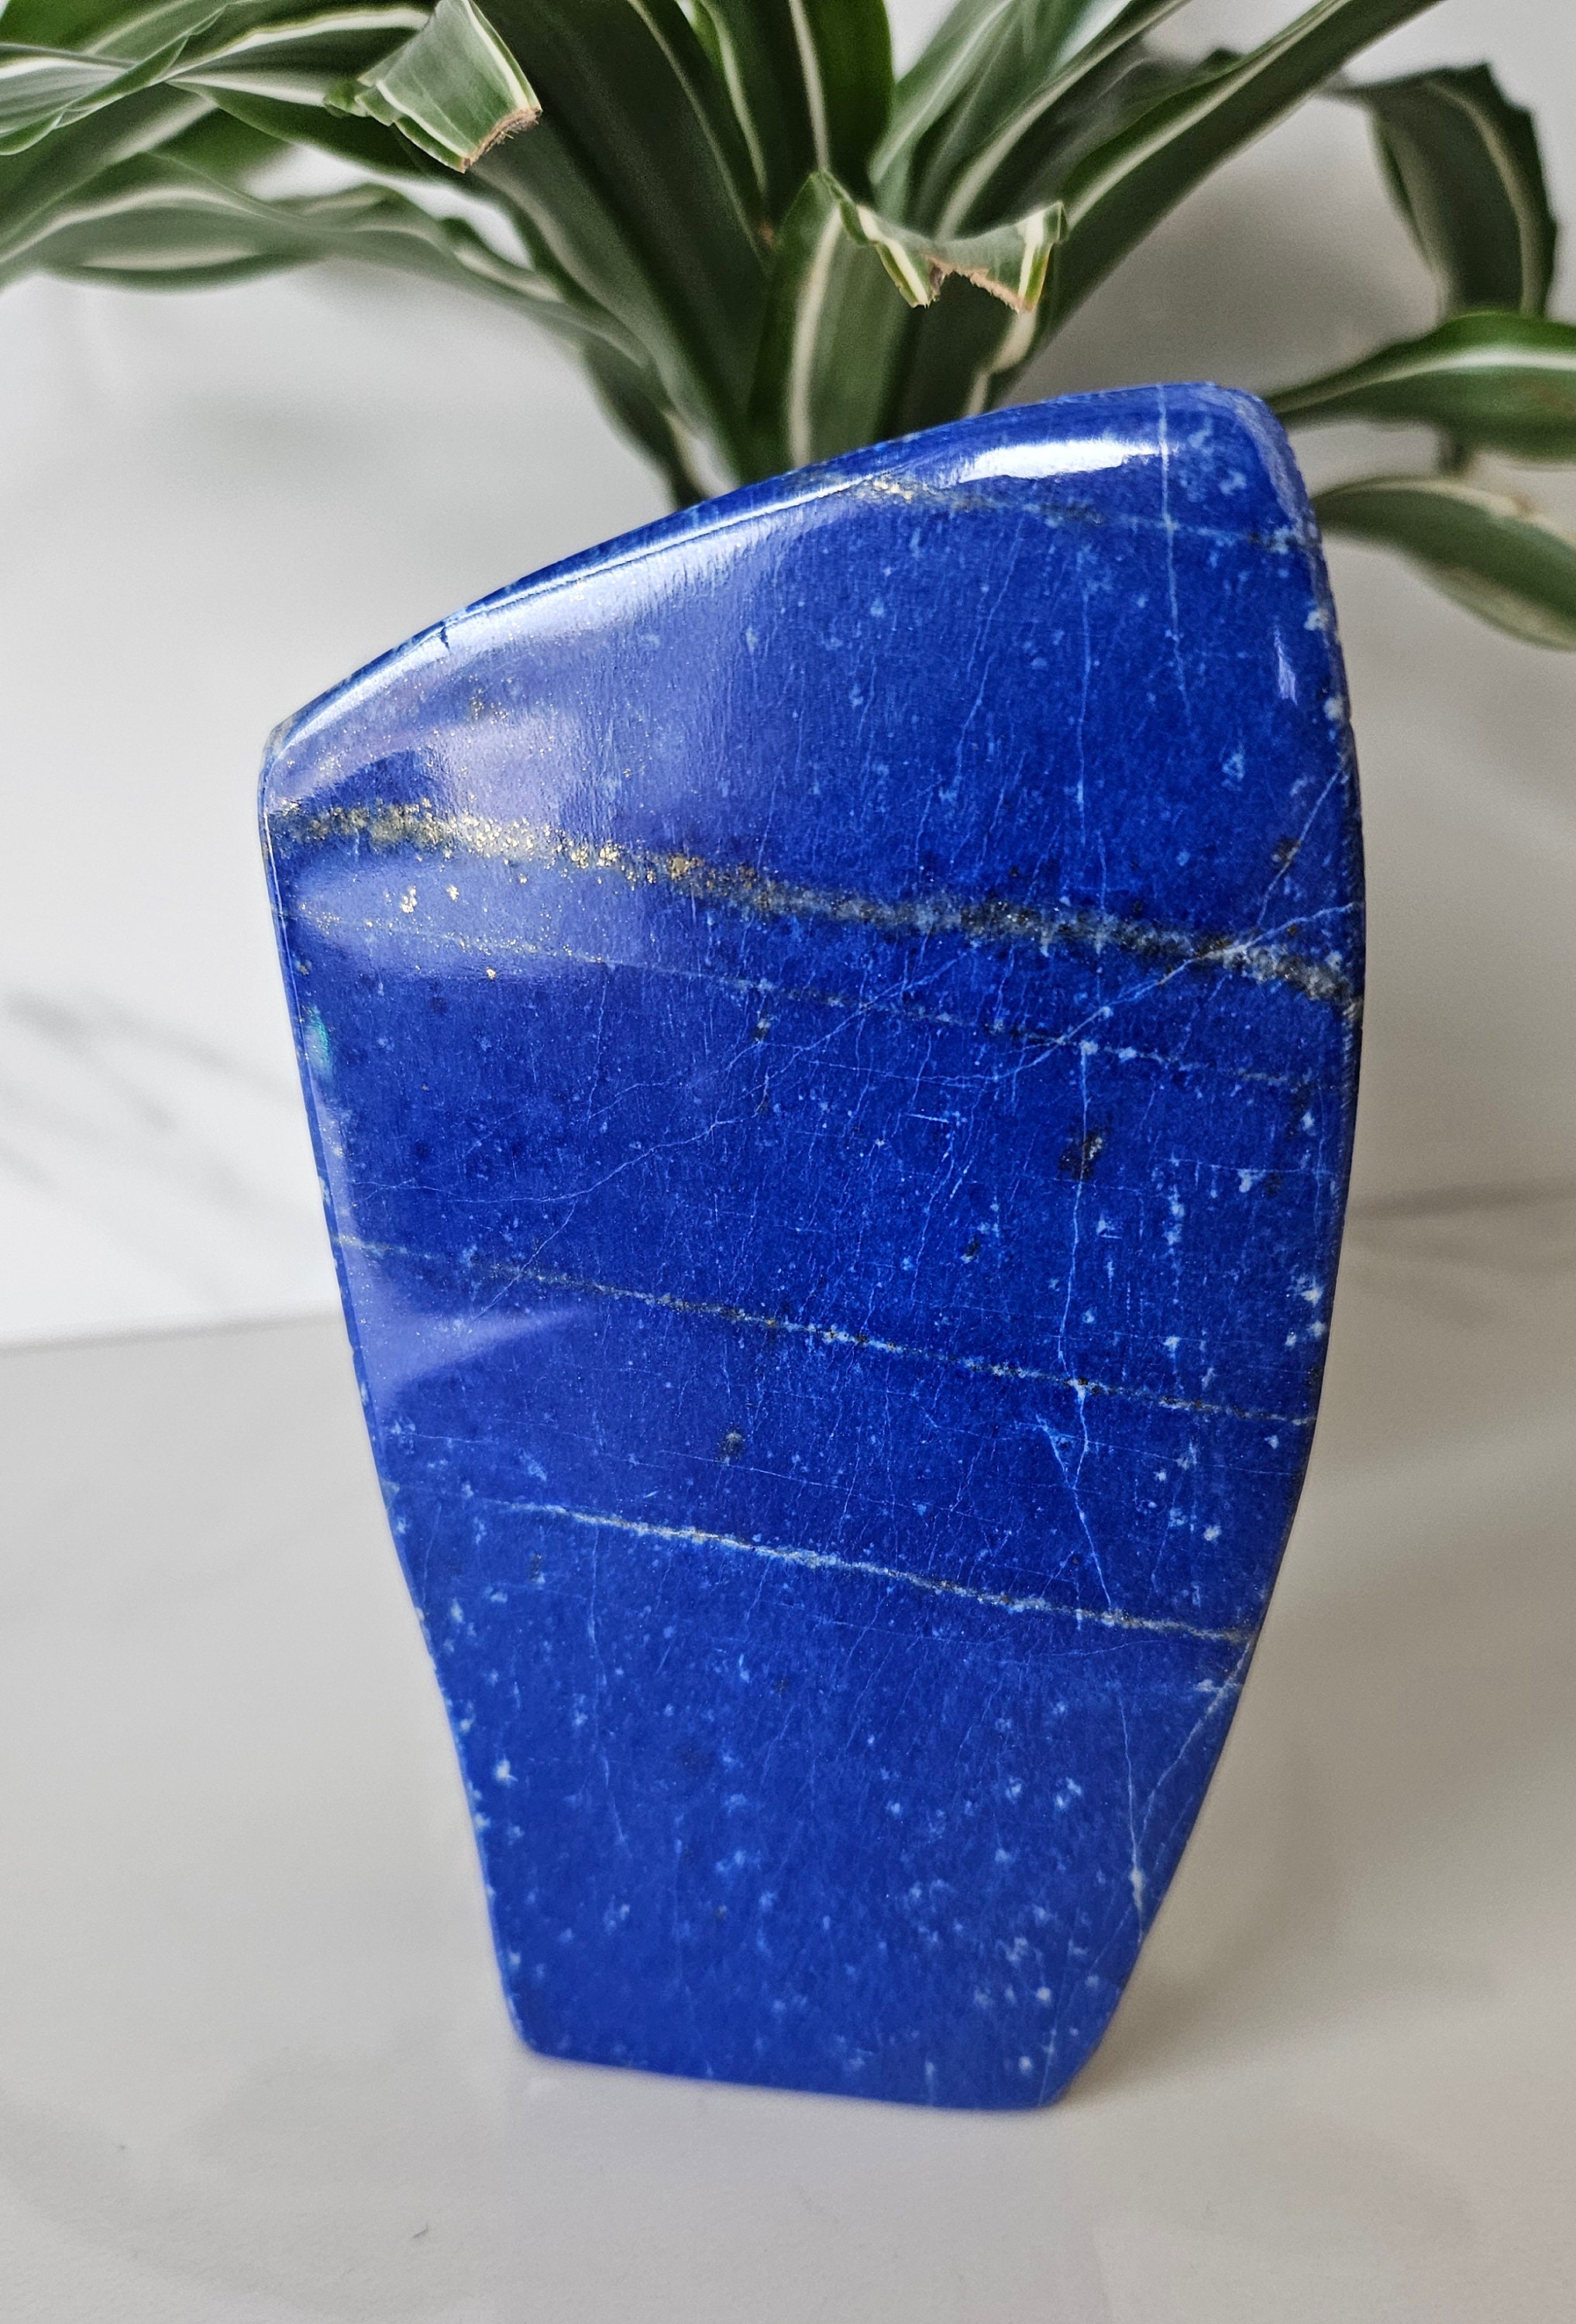 Polished Grade A++ Lapis Lazuli. Authentic Free Form Stone from Lapis Lazuli, Tumbled Stone, Gemstone Rock